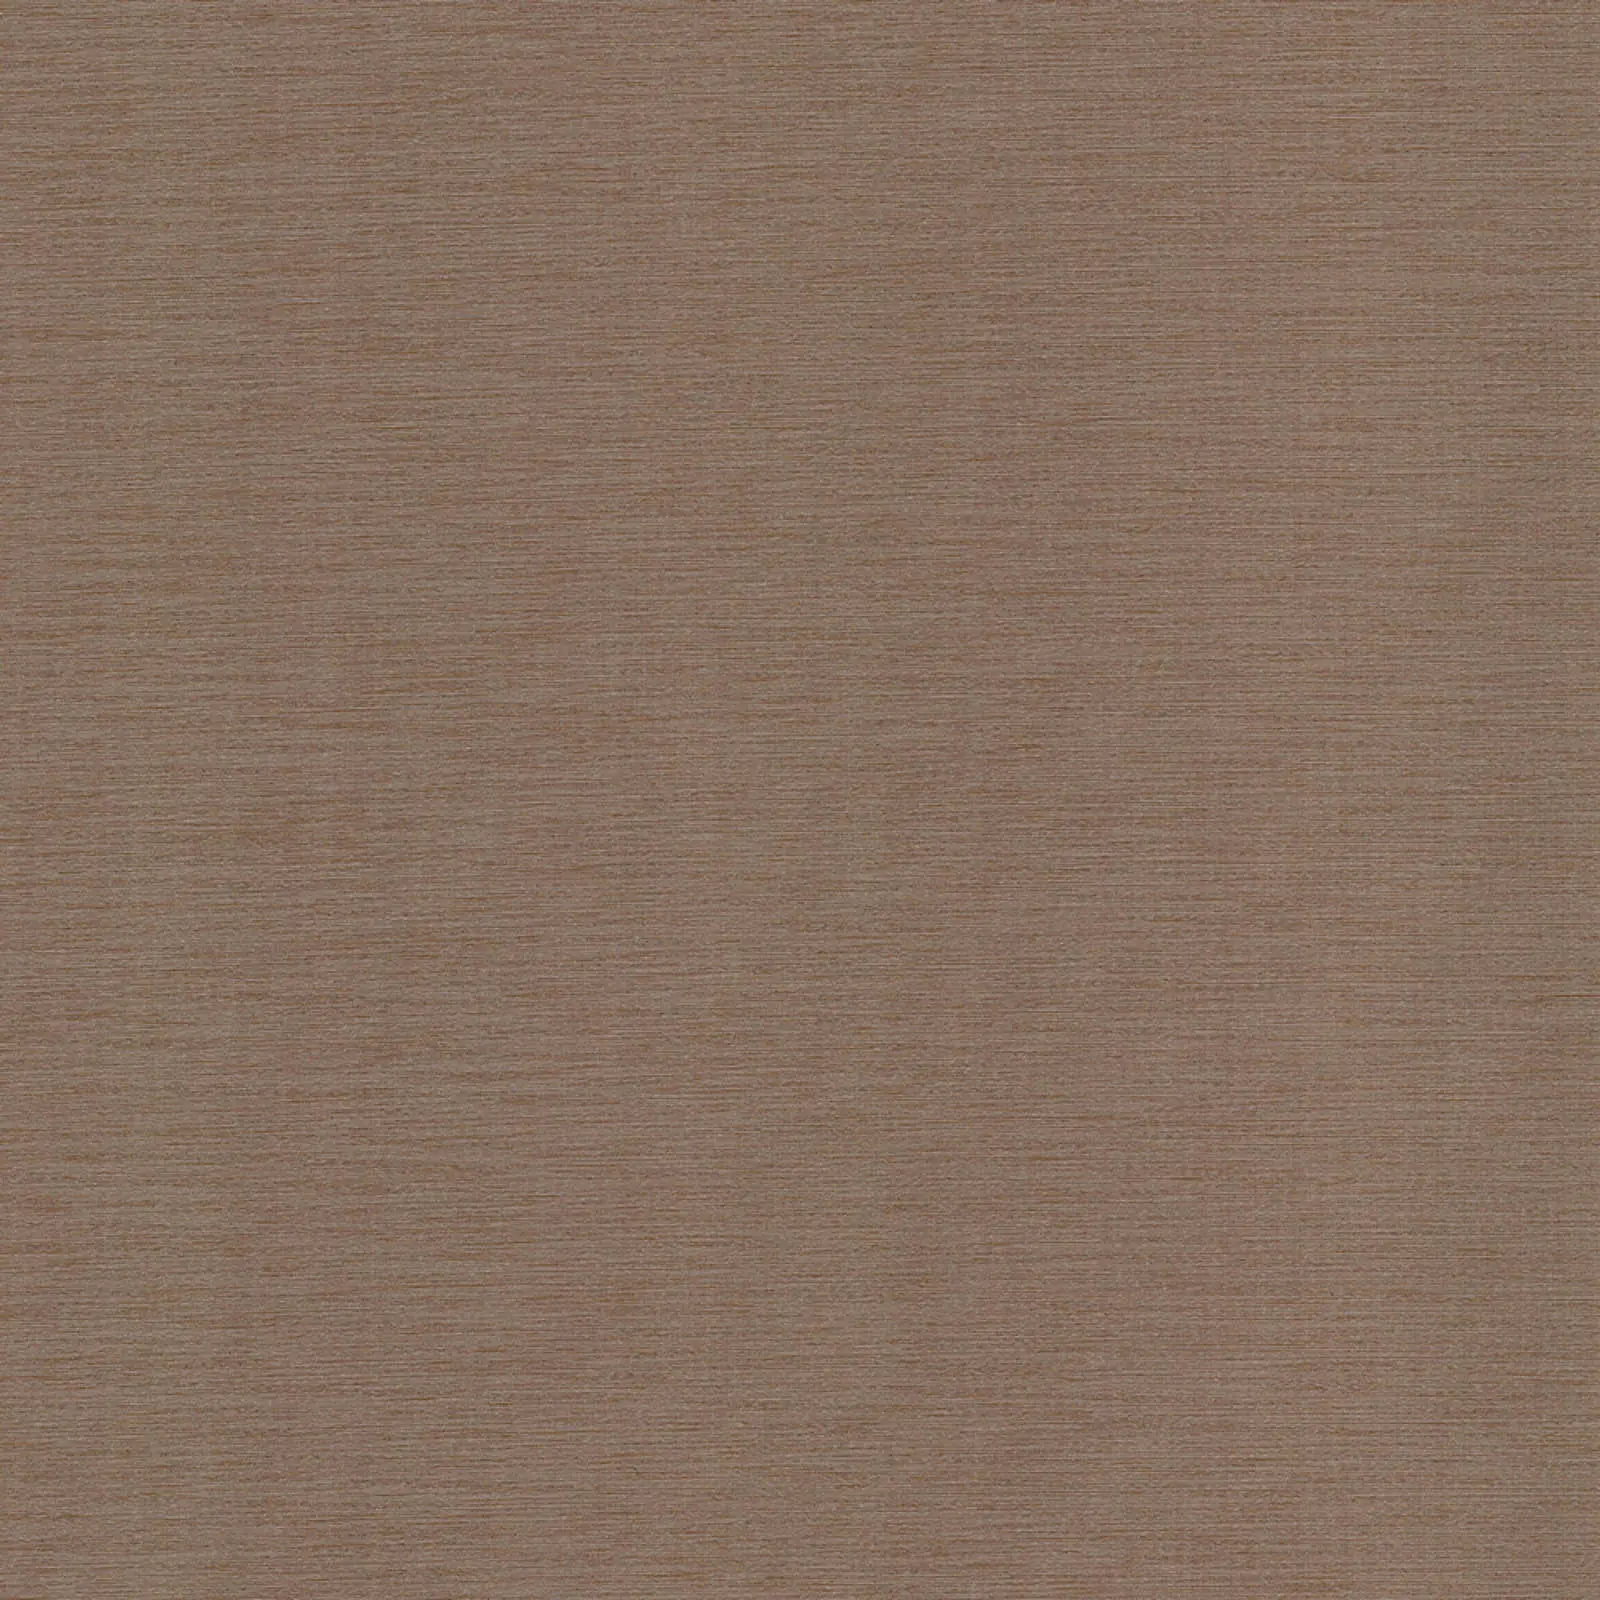 ткань Рулонные шторы Стандарт Порто-перл_Int коричневый